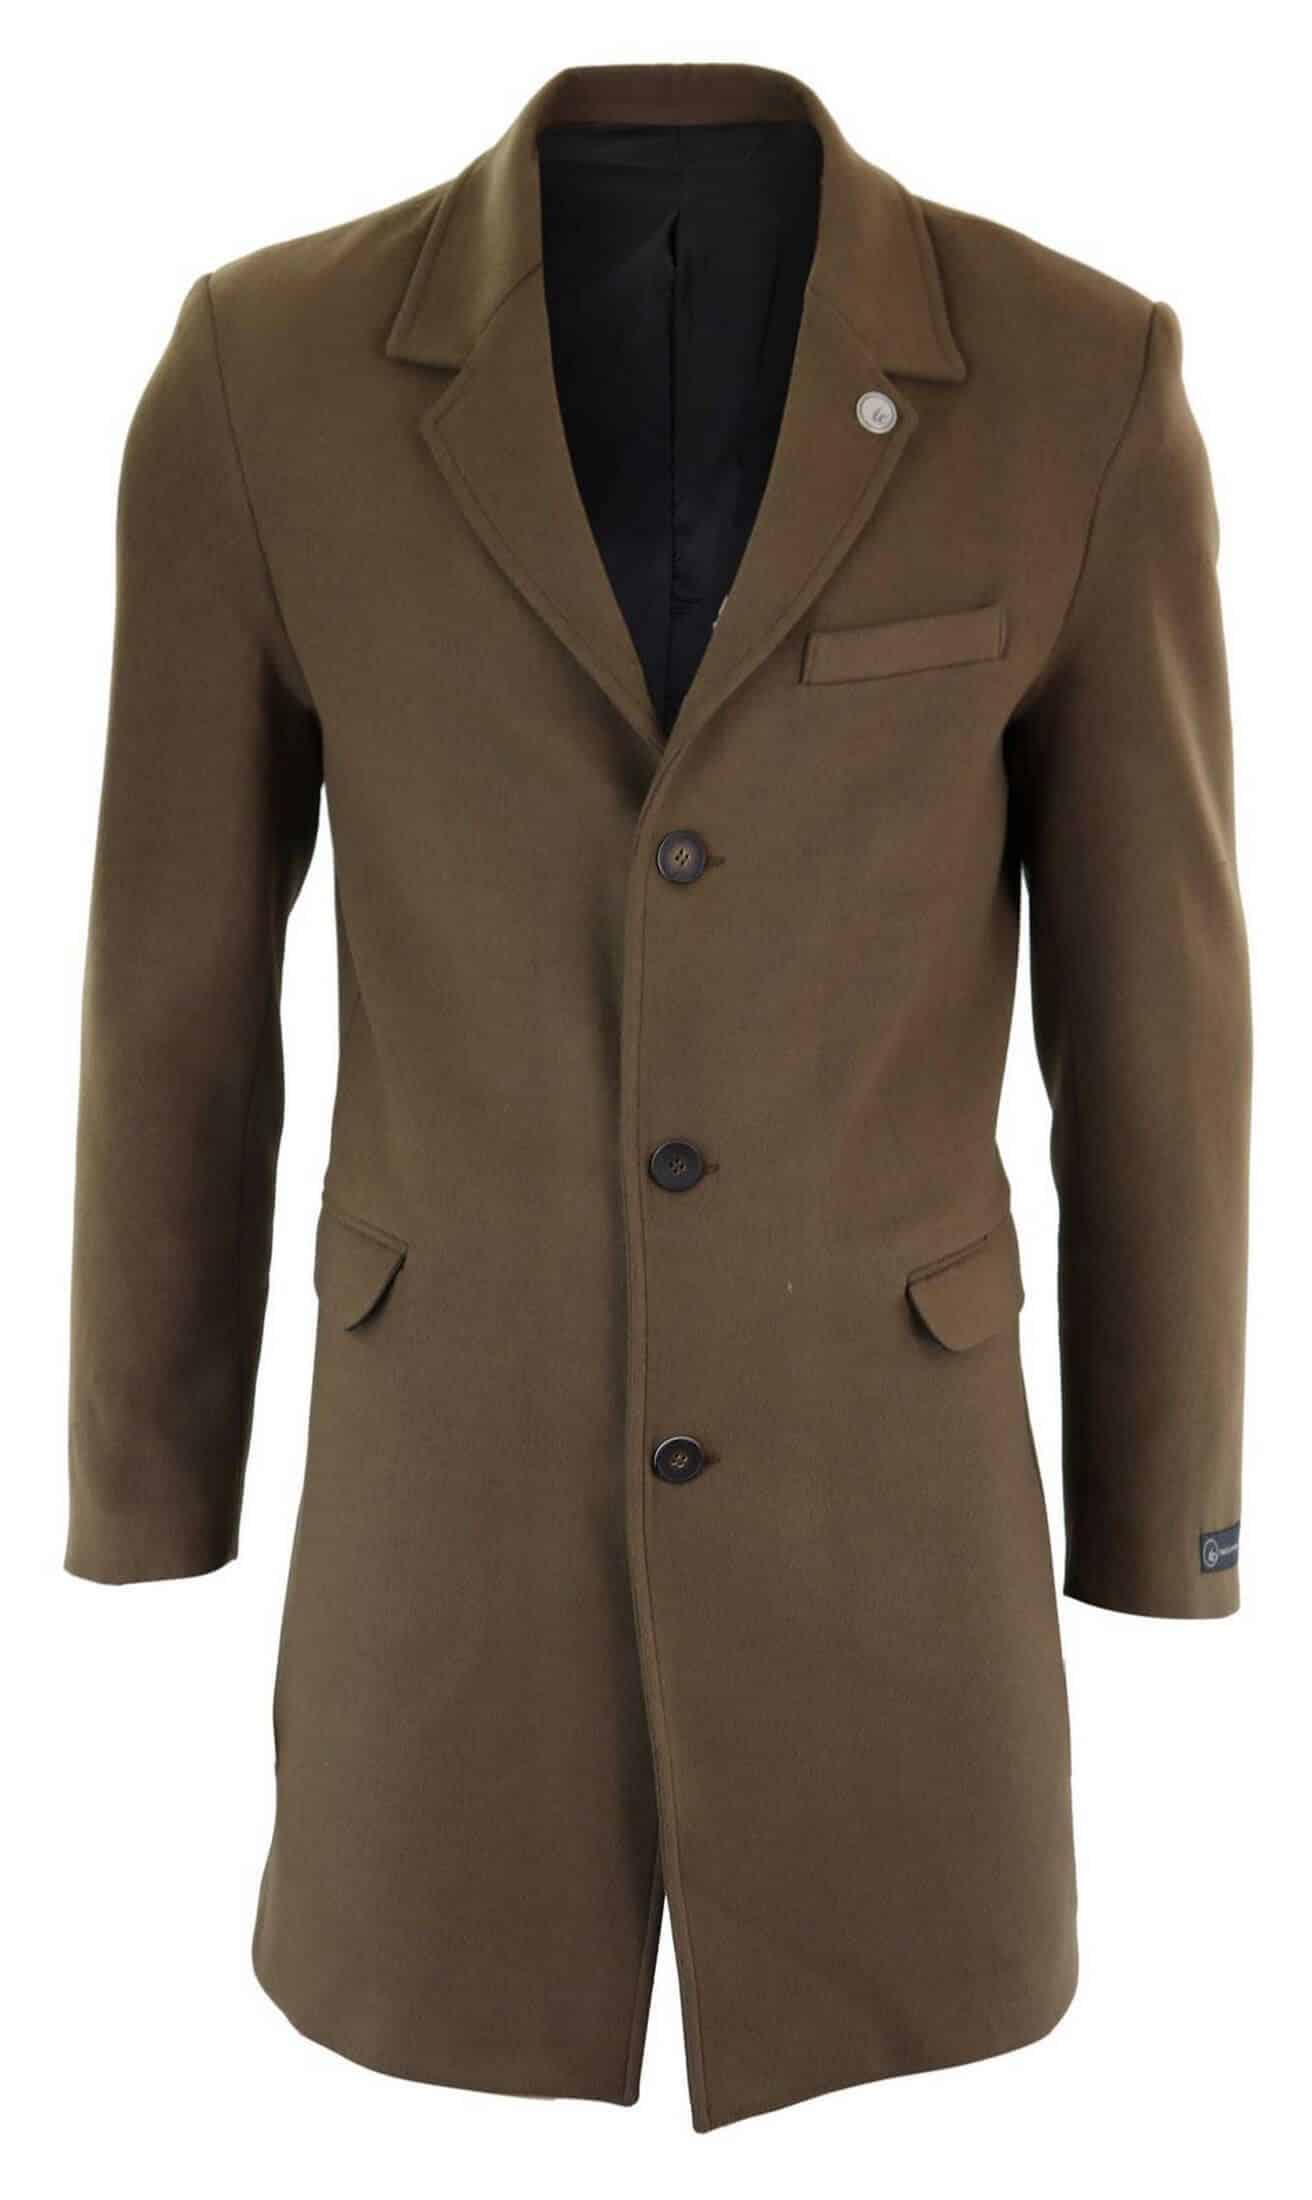 Men's Classic Wool Long Overcoat-Brown: Buy Online - Happy Gentleman